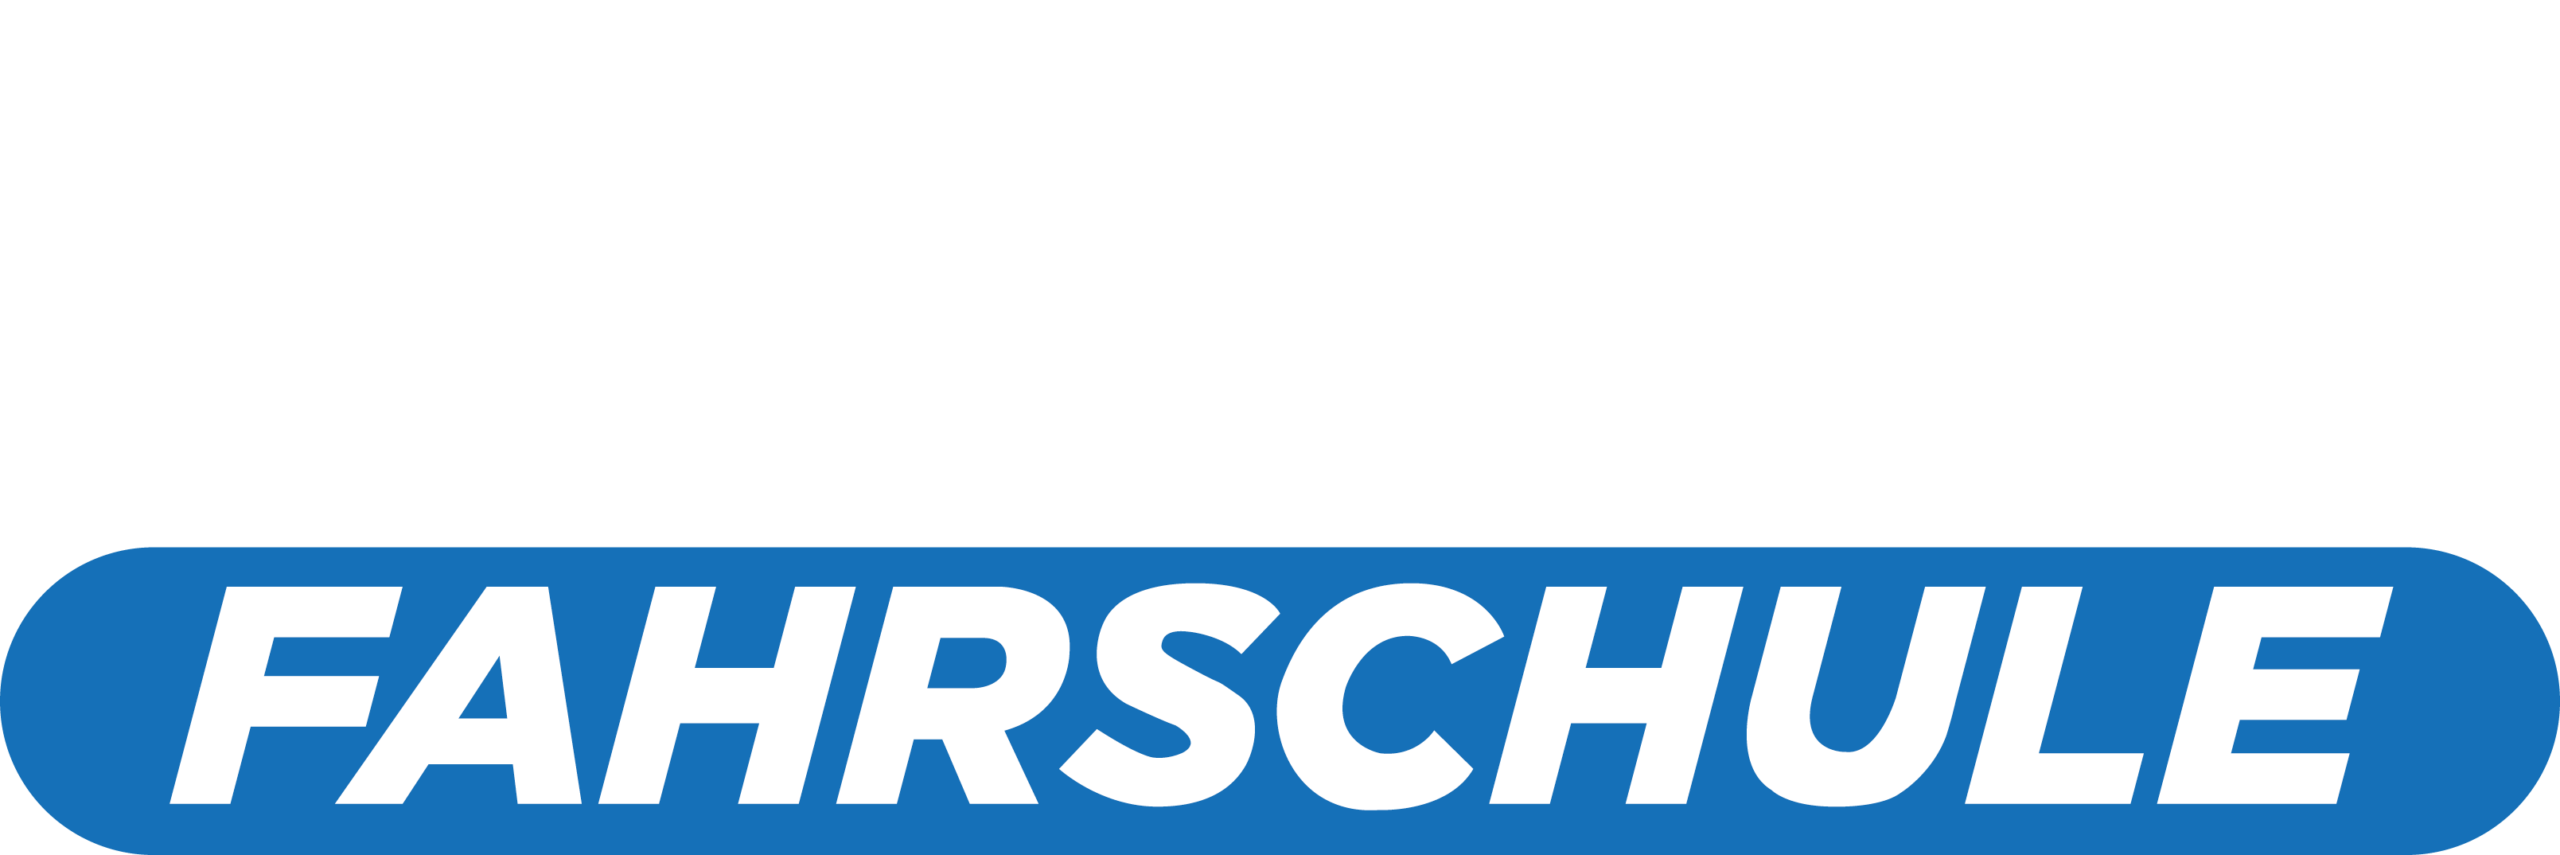 Mos Fahrschule Logo